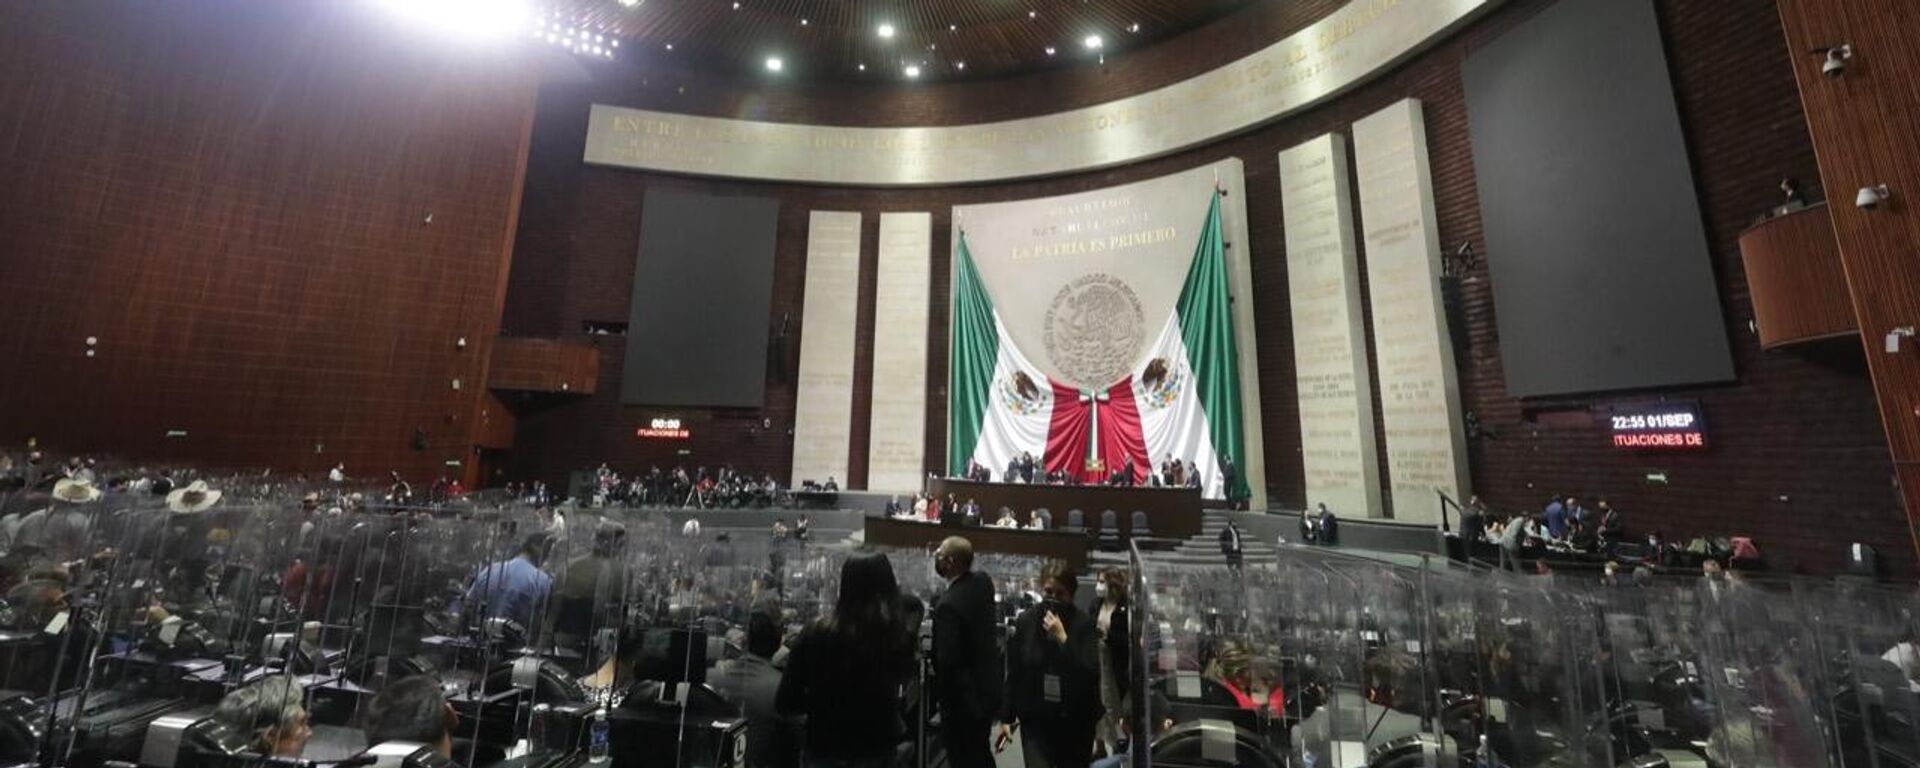 Cámara de Diputados en México  - Sputnik Mundo, 1920, 21.12.2021